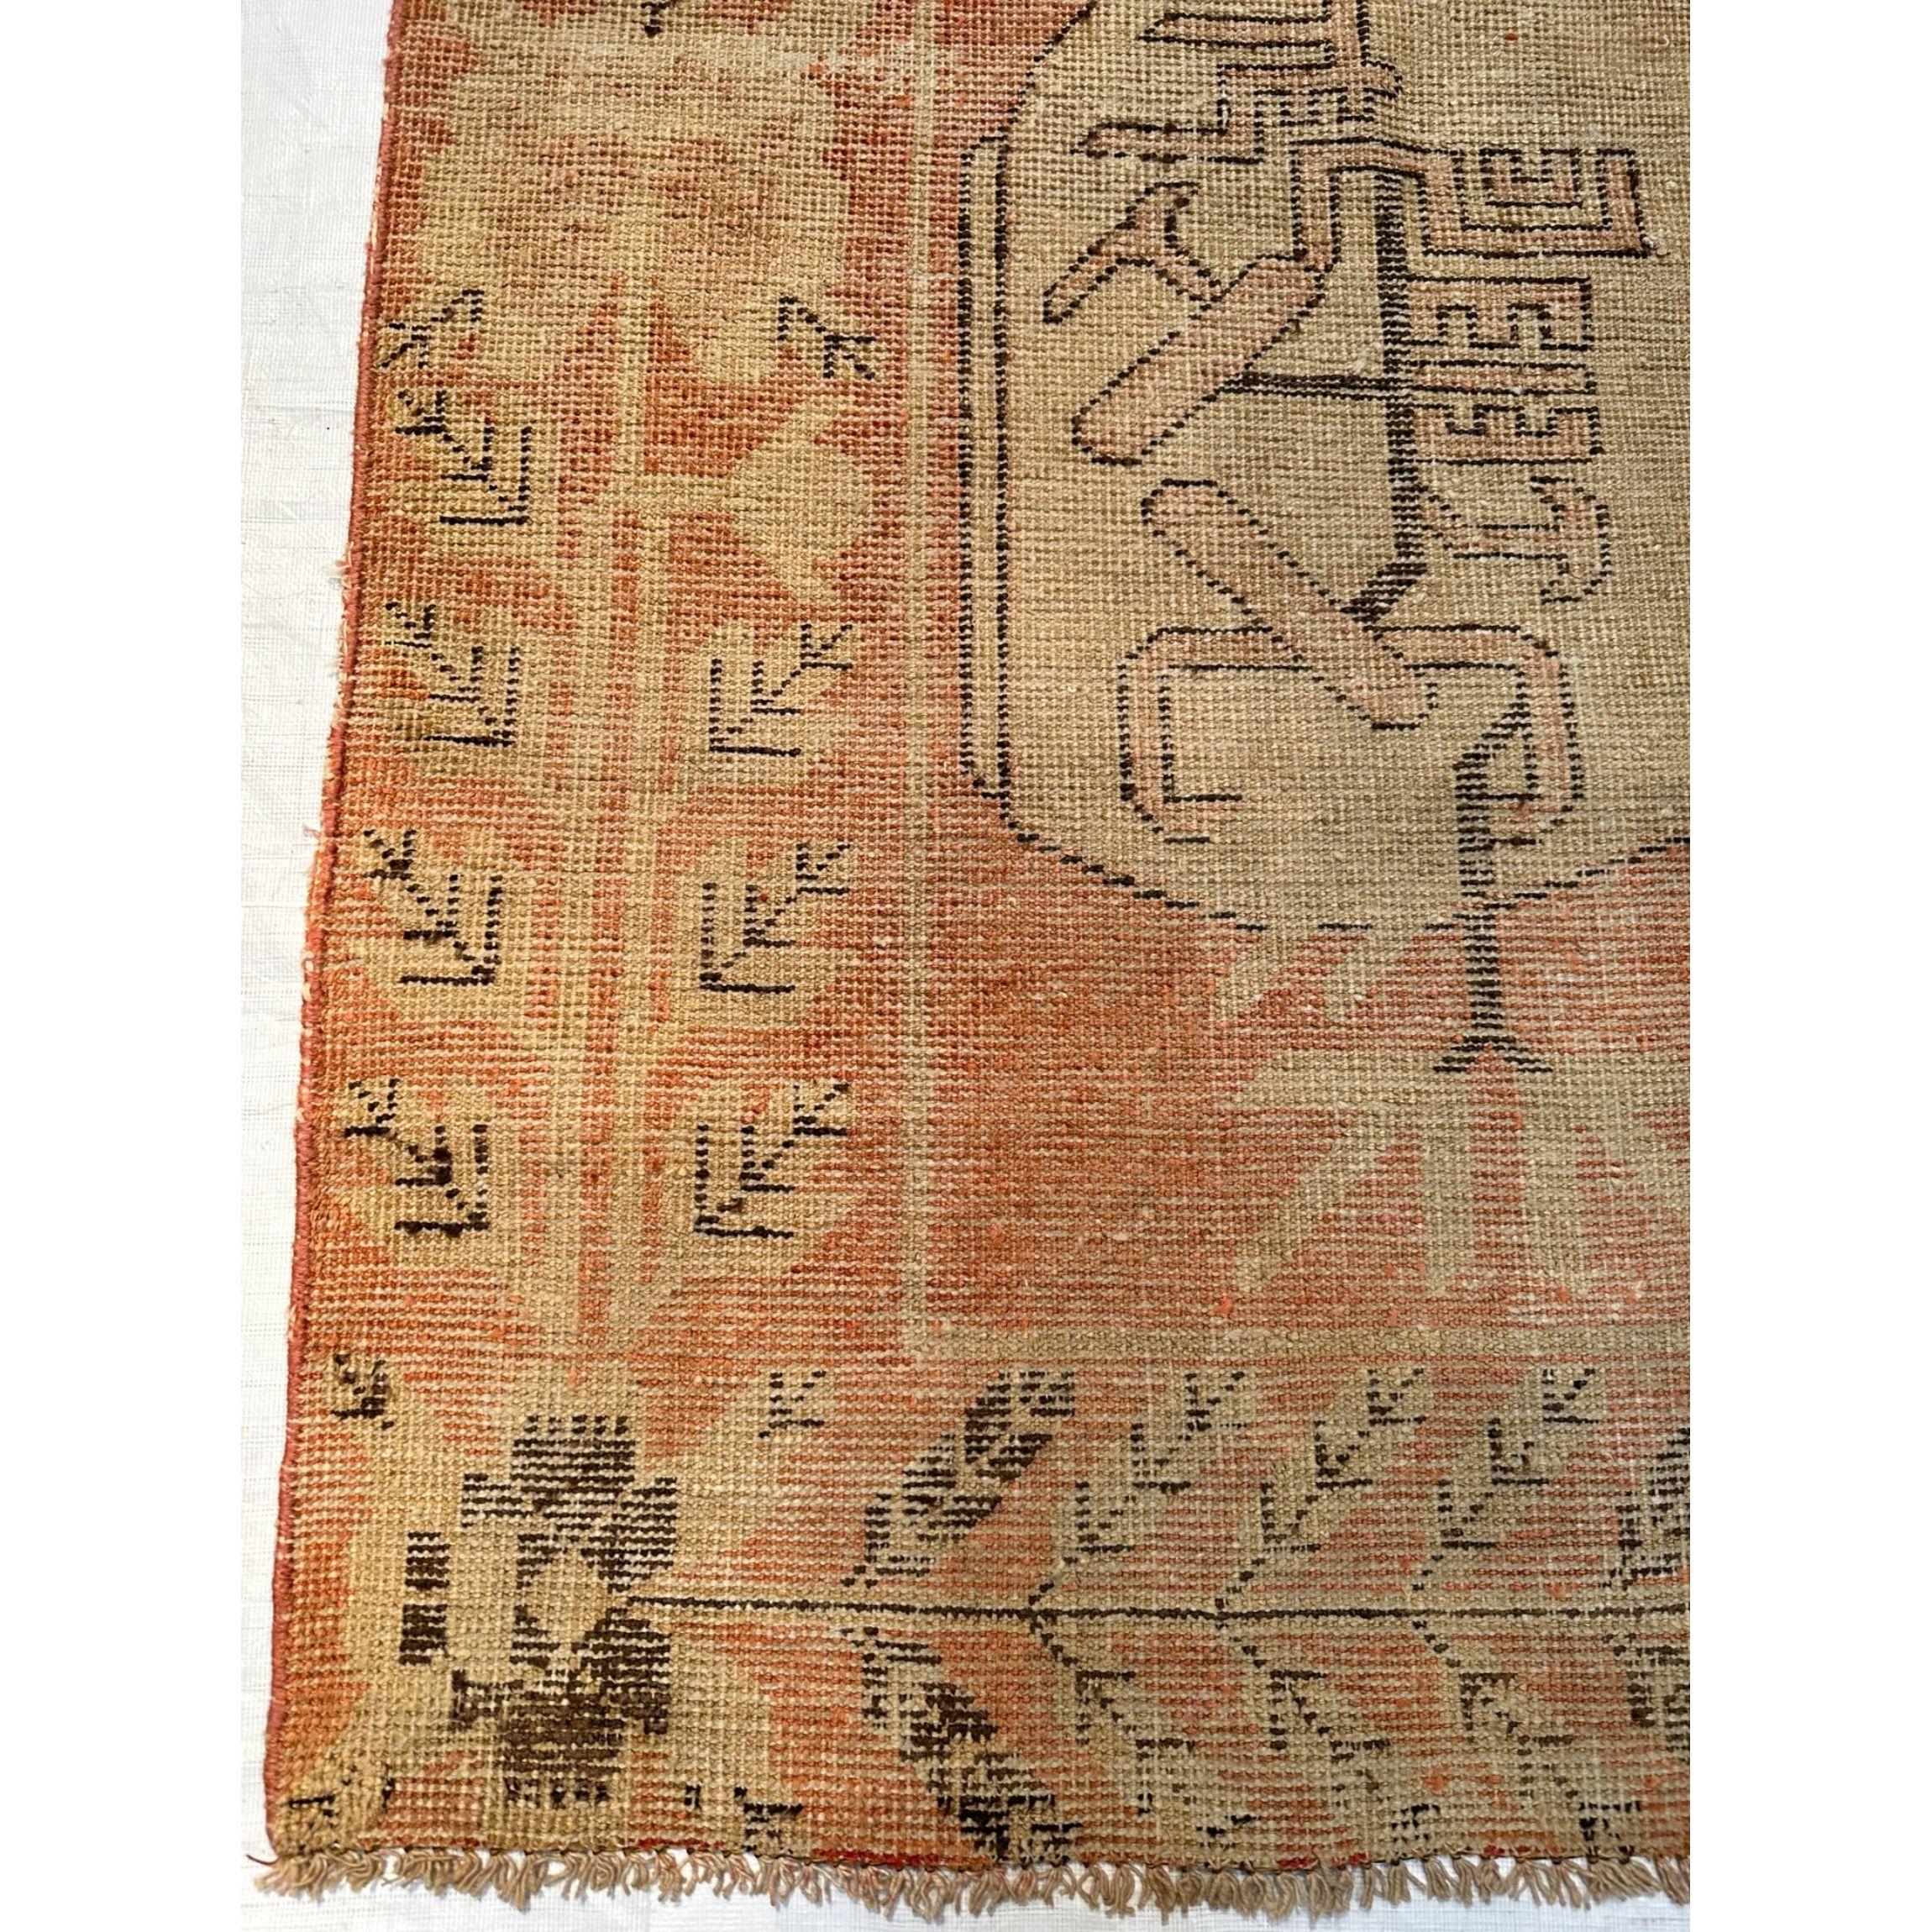 Die Wüstenoase Khotan war eine wichtige Station auf der Seidenstraße. Die Einwohner von Khotan waren erfahrene Teppichweber, die hochwertige antike Teppiche für den internen Gebrauch und den Handel herstellten. Samarkand-Teppiche erreichten den